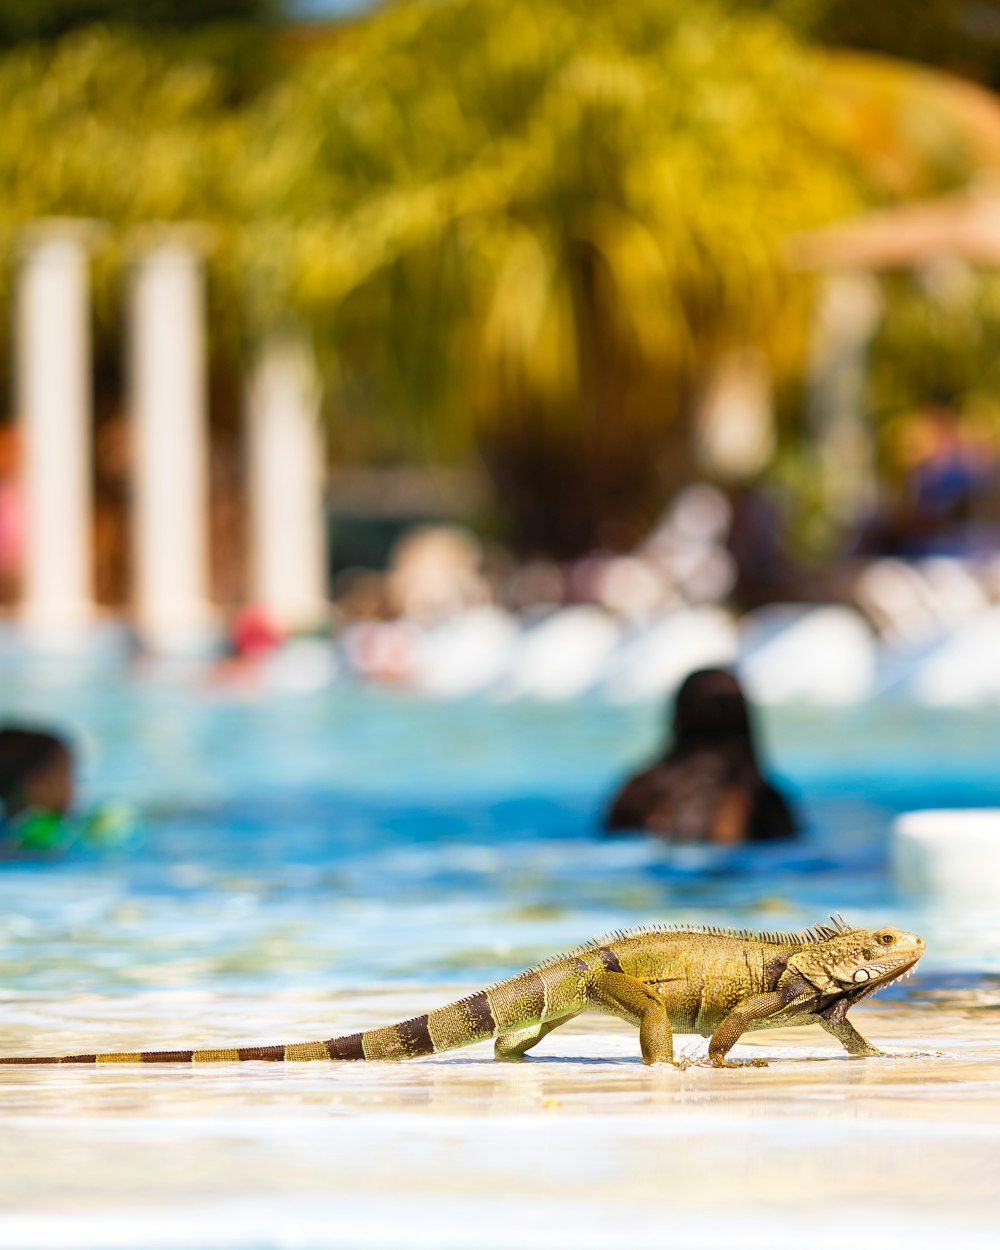 Photographie sélective d’un iguane près d’une piscine